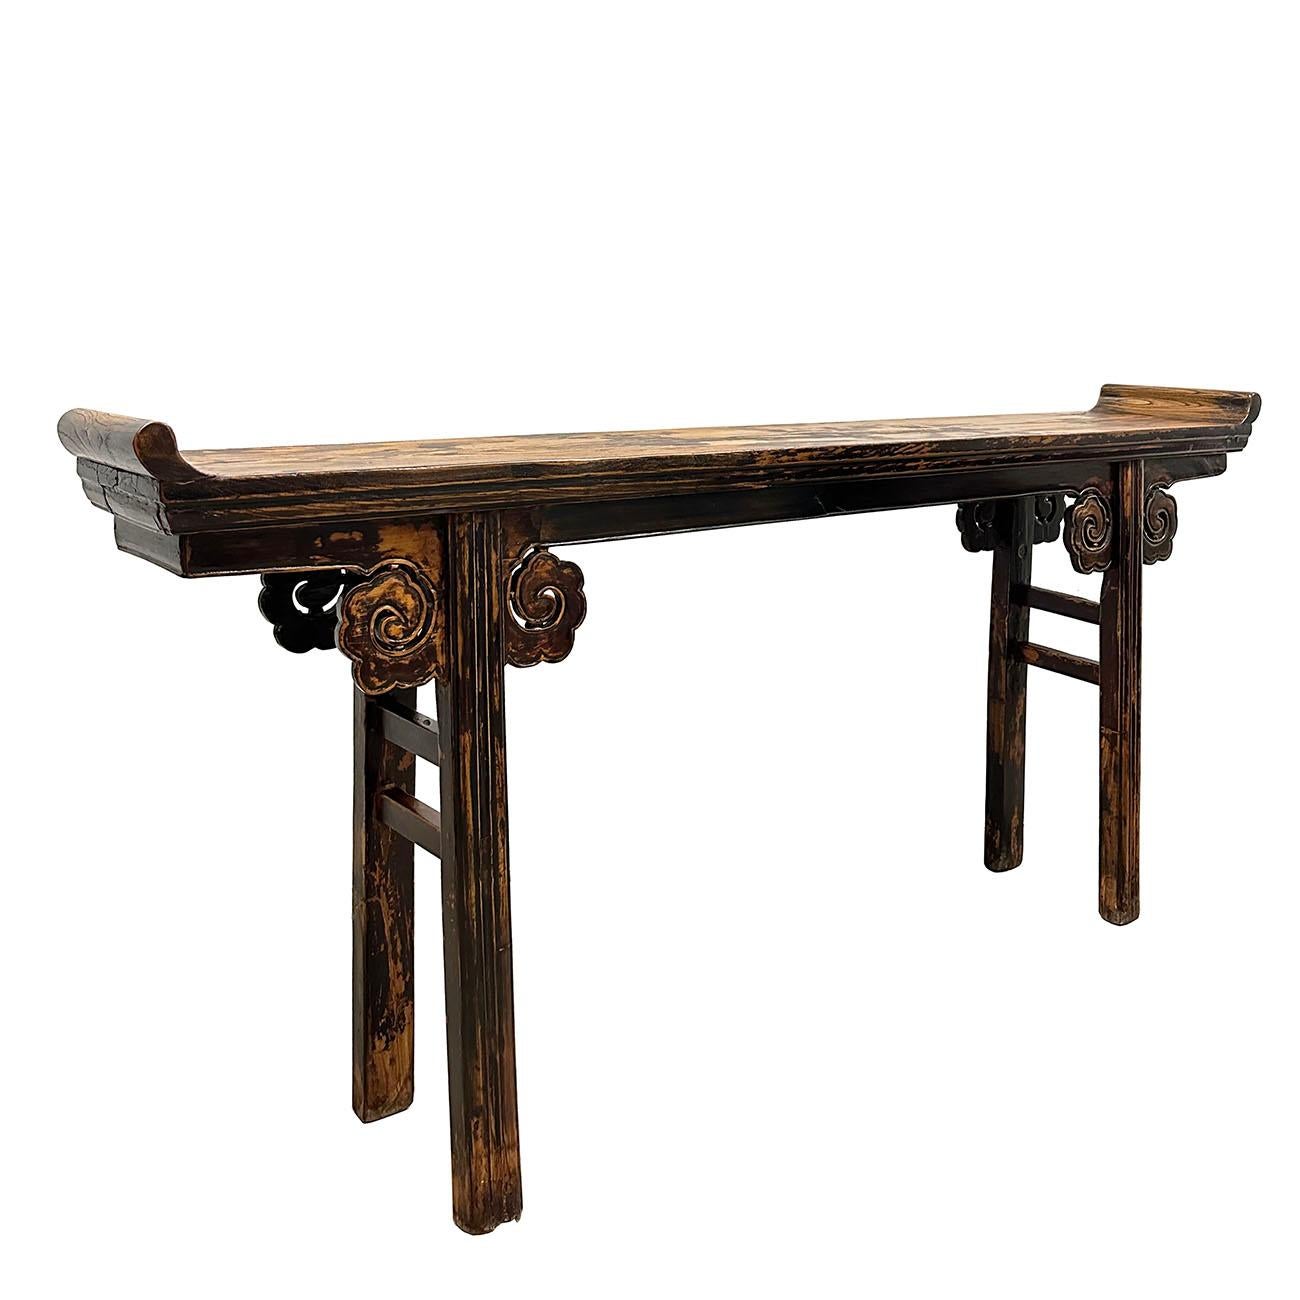 Dieser antike offene geschnitzte Altartisch aus China stammt aus dem 19. Jahrhundert und ist noch in sehr gutem Zustand. Es zeigt den traditionellen Stil der nordchinesischen Kultur. Dieser chinesische, antike Altartisch wurde aus Massivholz